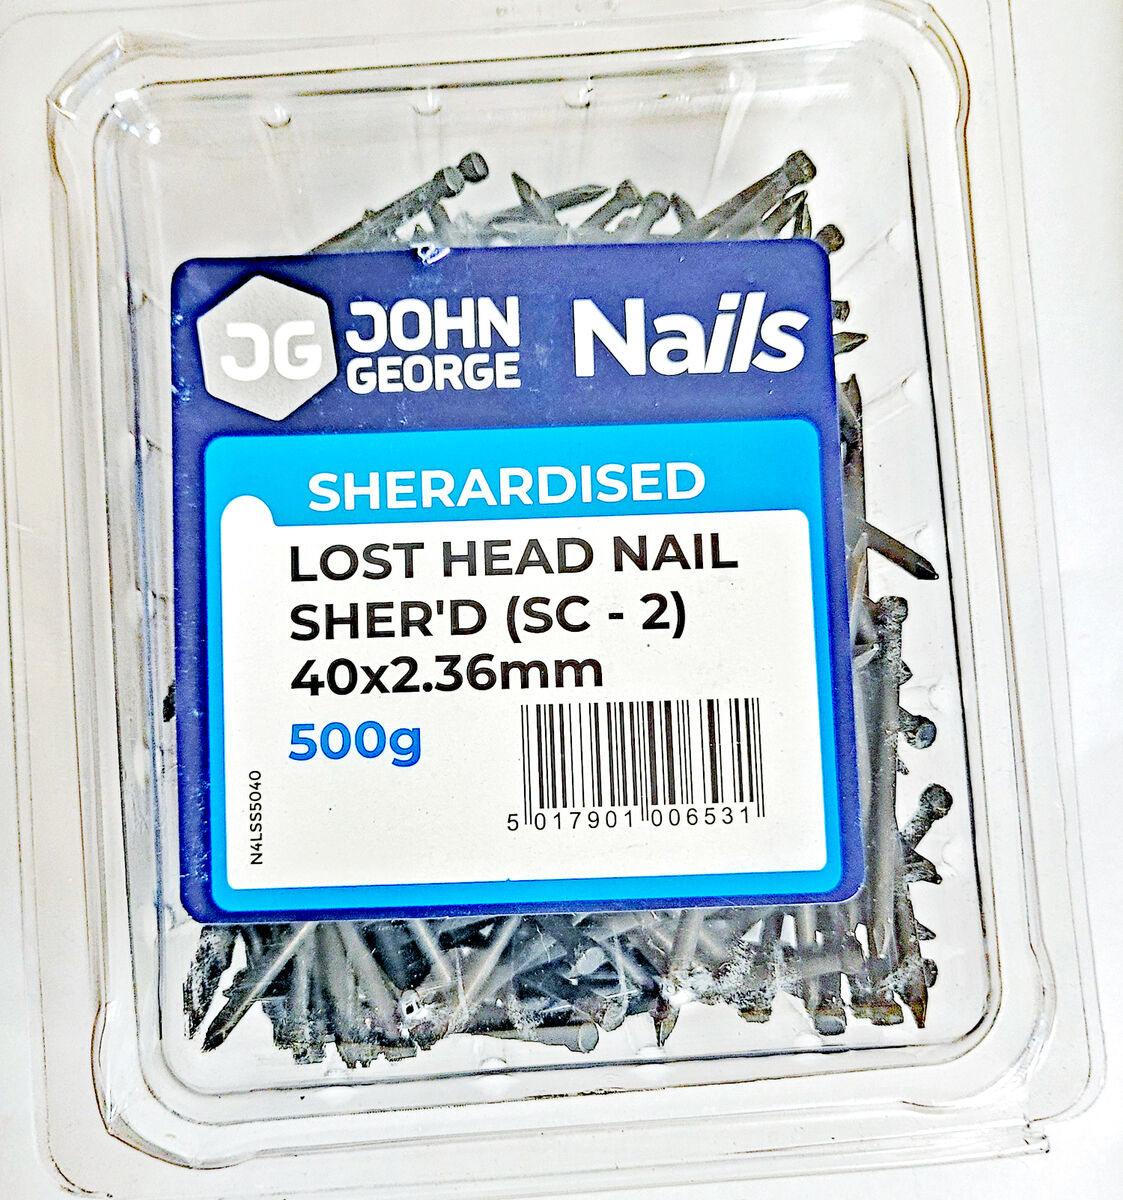 Lost Head nails box -web2.jpg